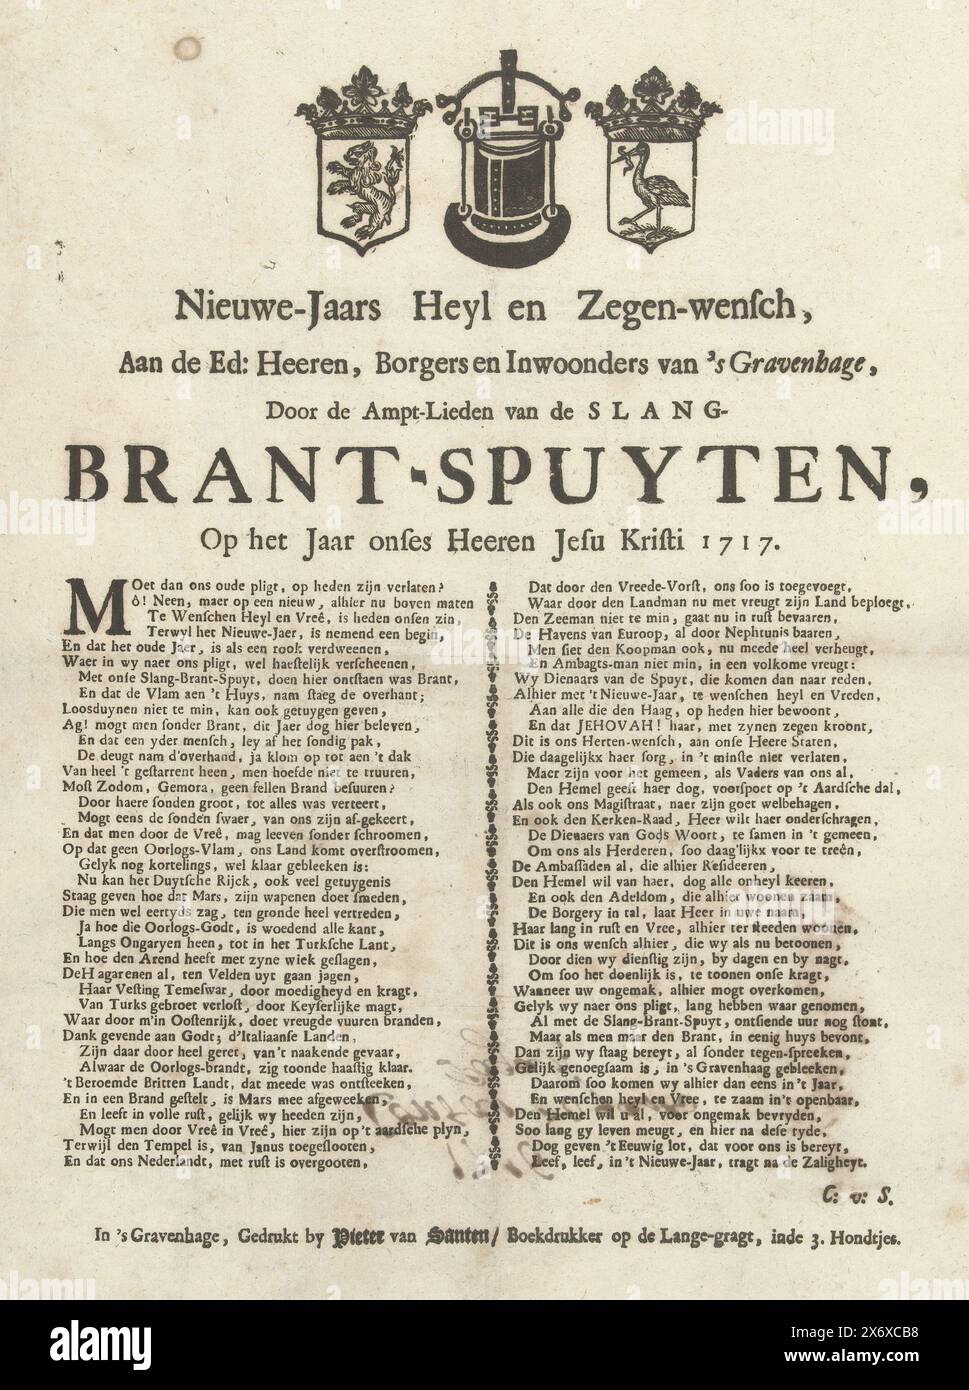 Saluto di Capodanno da parte dei vigili del fuoco dell'Aia per l'anno 1717, auguri Heyl e Blessing di Capodanno, all'ed: signori, Borgers e abitanti di l'Aia, dall'Ampt-Lieden van de slang-Brant-Spuyten, l'anno onse Heeren Jesu Kristi 1717 (titolo su oggetto), saluto di Capodanno da parte degli operatori dei pompieri a manichetta dell'Aia per l'anno 1717. Versetto in due colonne, in cima un secchio di fuoco o una pompa tra gli stemmi dell'Olanda e dell'Aia., stampa, stampatore: Pieter van Santen, (menzionato sull'oggetto), sconosciuto, (menzionato sull'oggetto), l'Aia, 1716 - 1717 Foto Stock